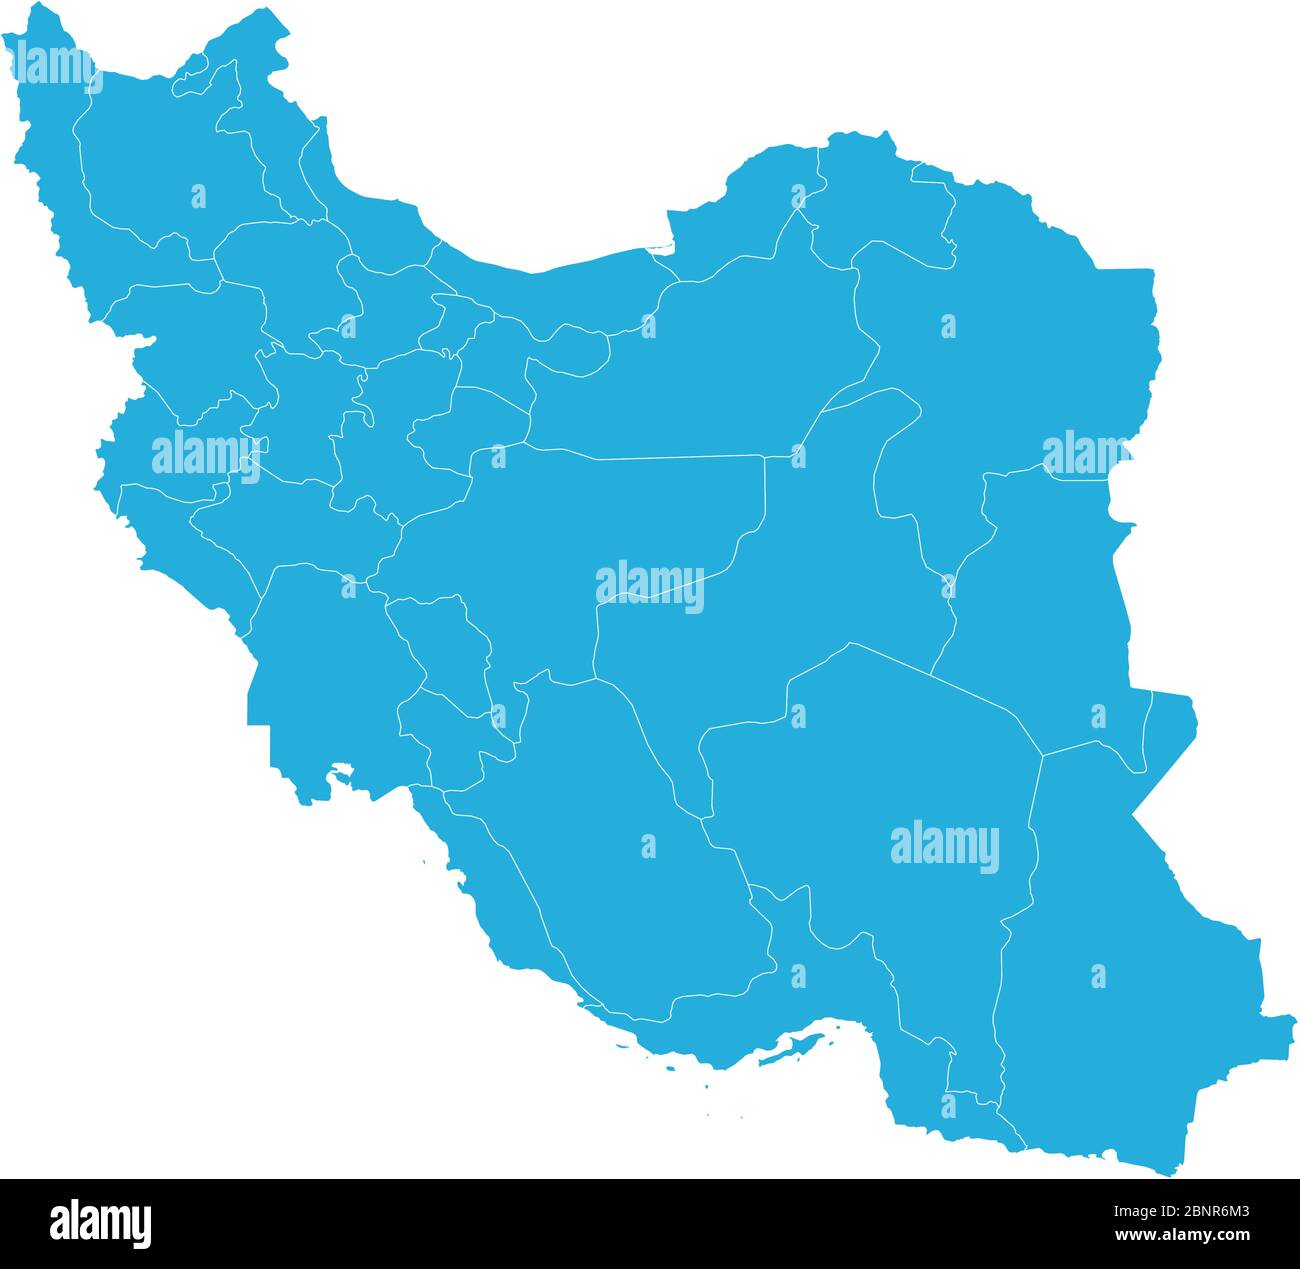 Politische Landkarte des Iran mit blau markierten Provinzen. Perfekt für Hintergründe, Hintergrund, Banner, Aufkleber, Etikett, Poster, Diagramm, Abzeichen usw. Stock Vektor